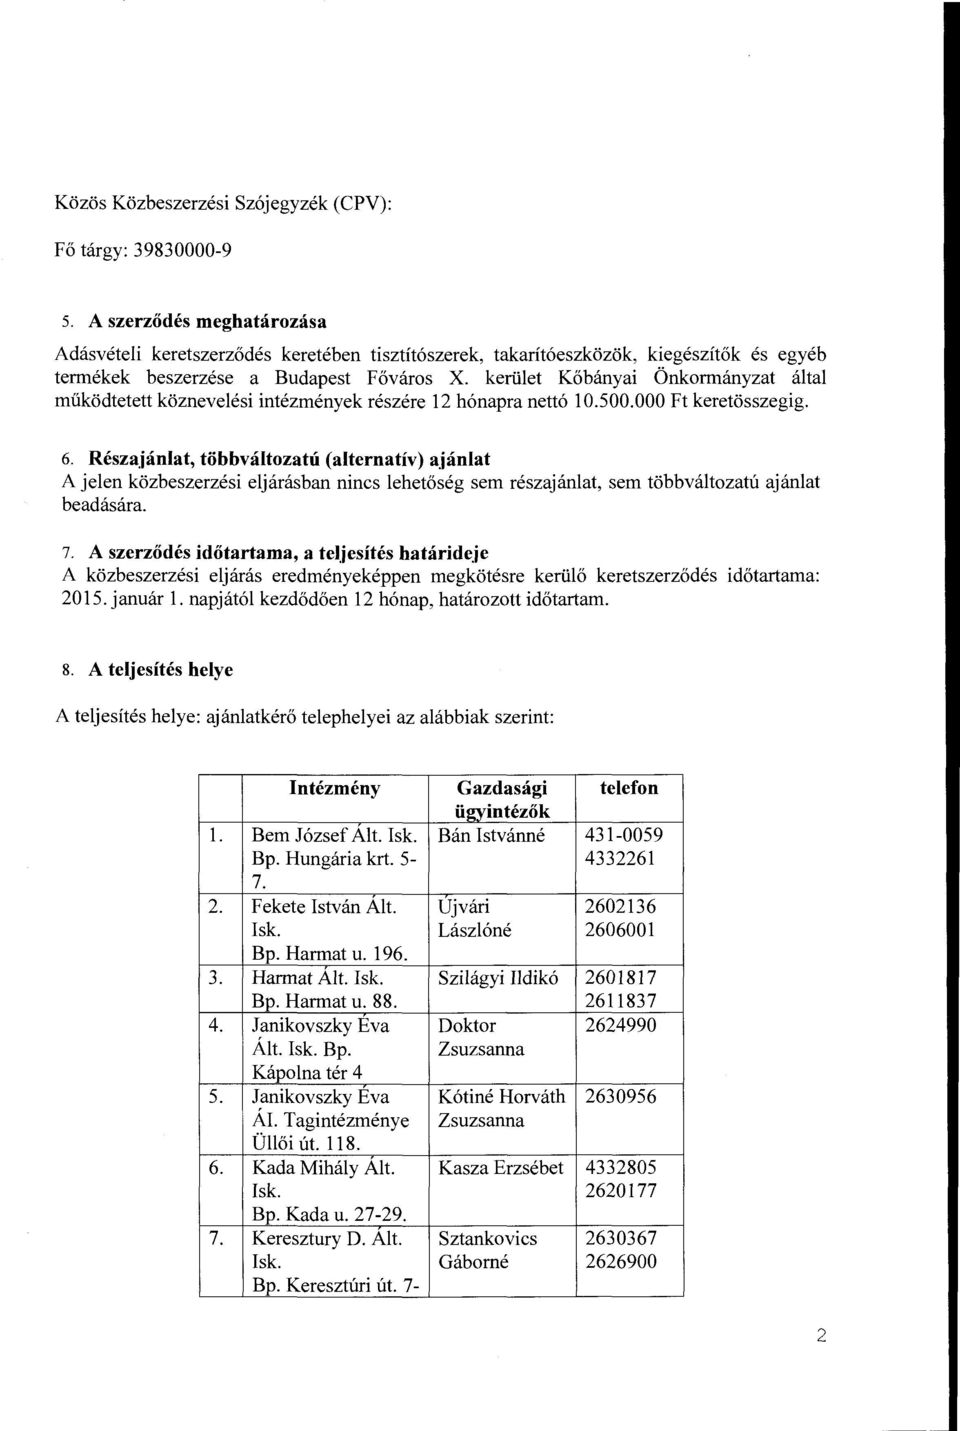 ketiilet Kobanyai Onkormanyzat altai miikodtetett koznevelesi intezmenyek reszere 12 h6napra nett6 10.500.000 Ft keretosszegig. 6.